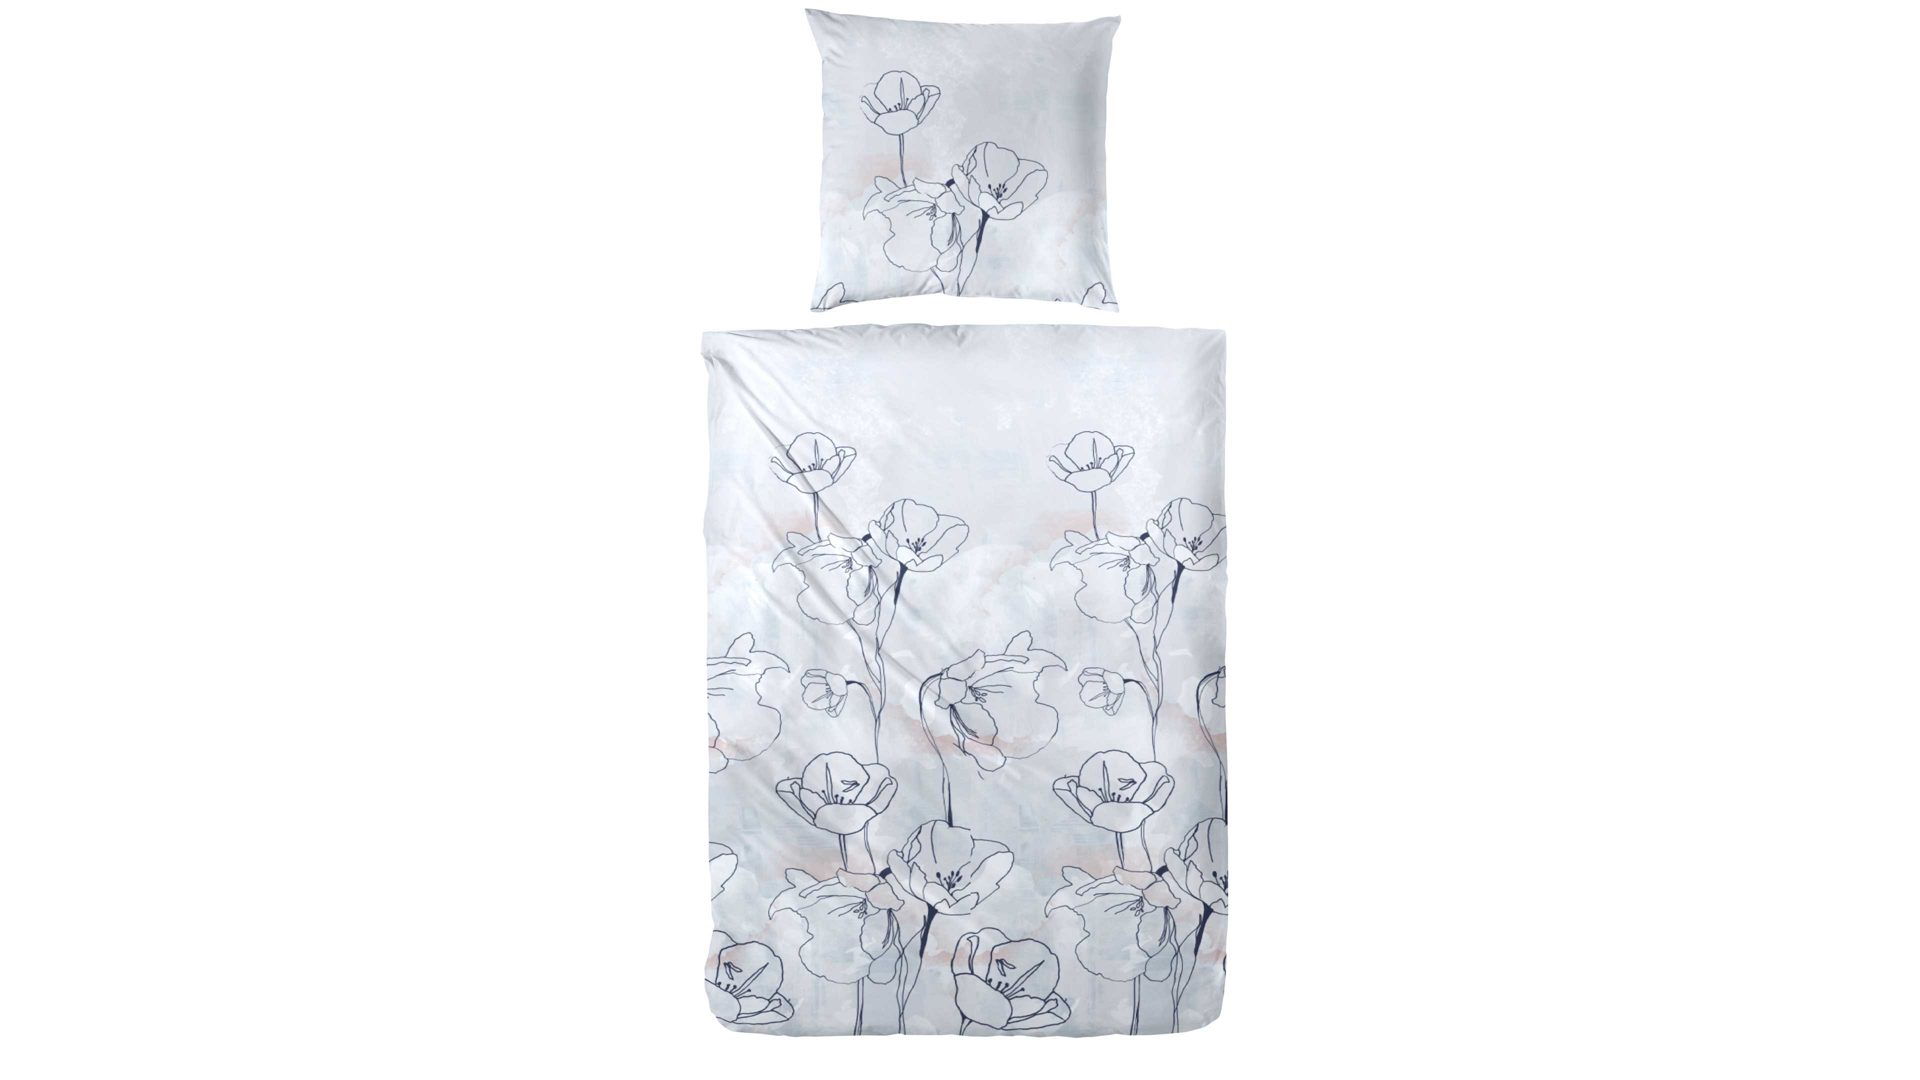 Bettwäsche-Set H.g. hahn haustextilien aus Stoff in Grau HAHN Bettwäsche-Set zweiteilig, ca. 155 x 220 cm - graublaues Blumenmuster